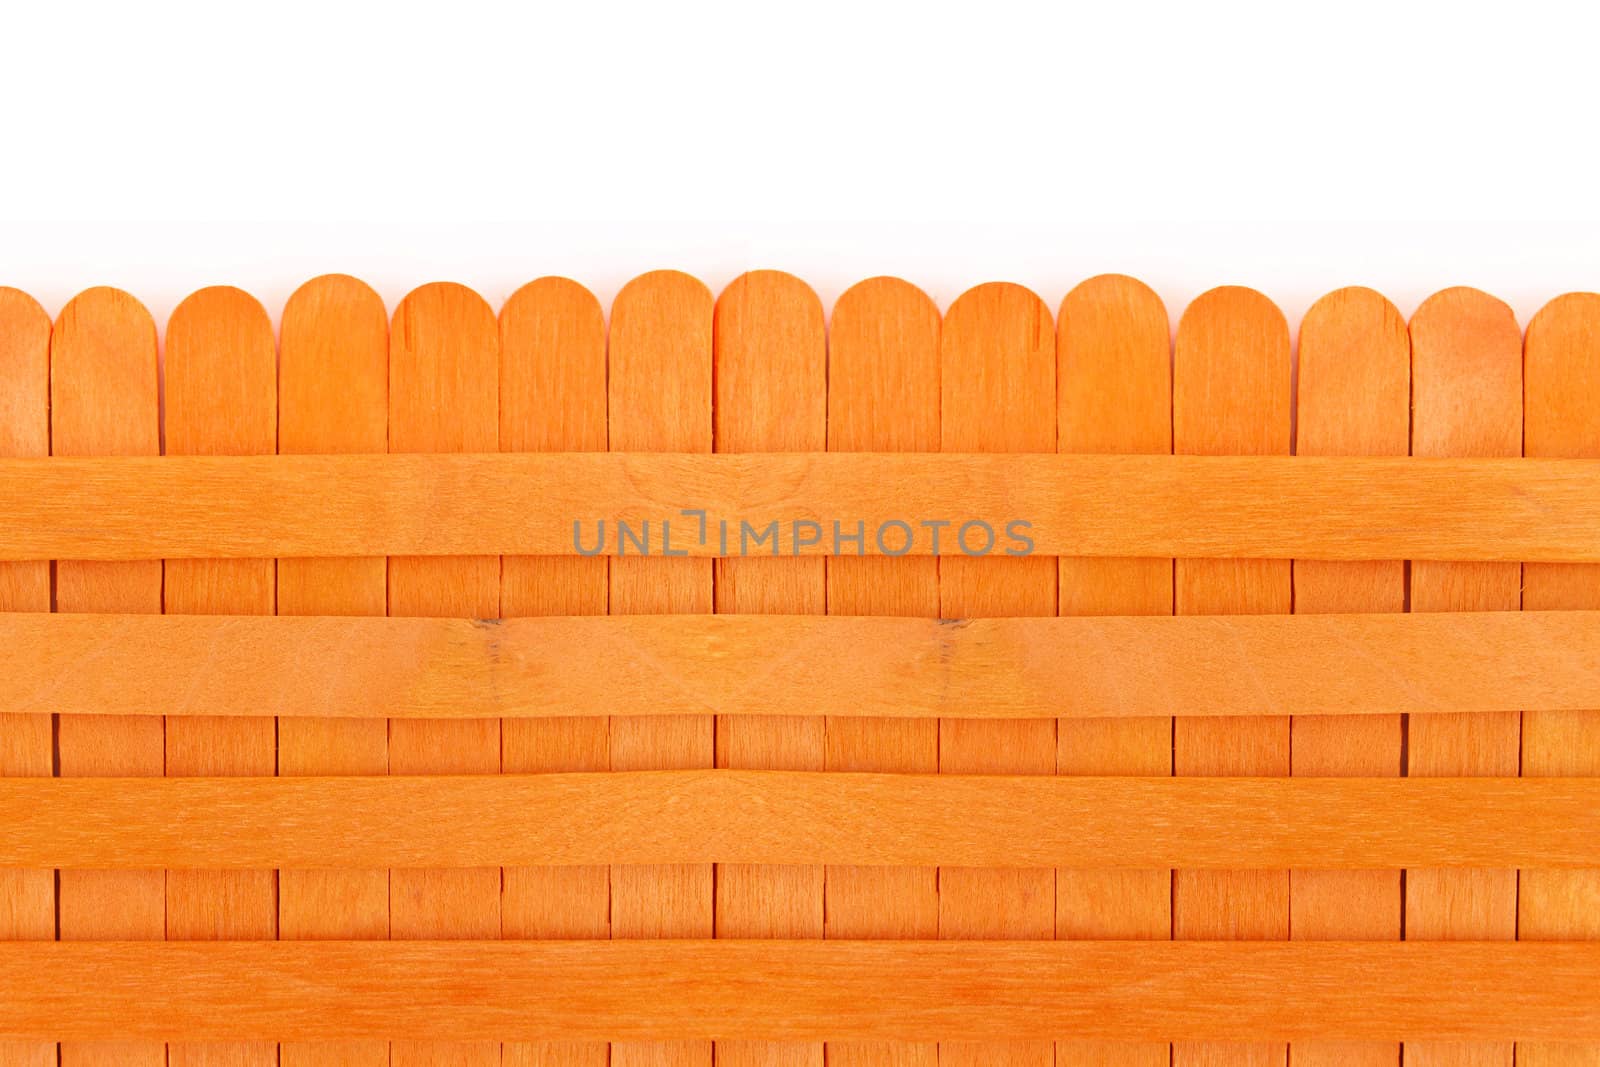 Orange wooden fence on white background